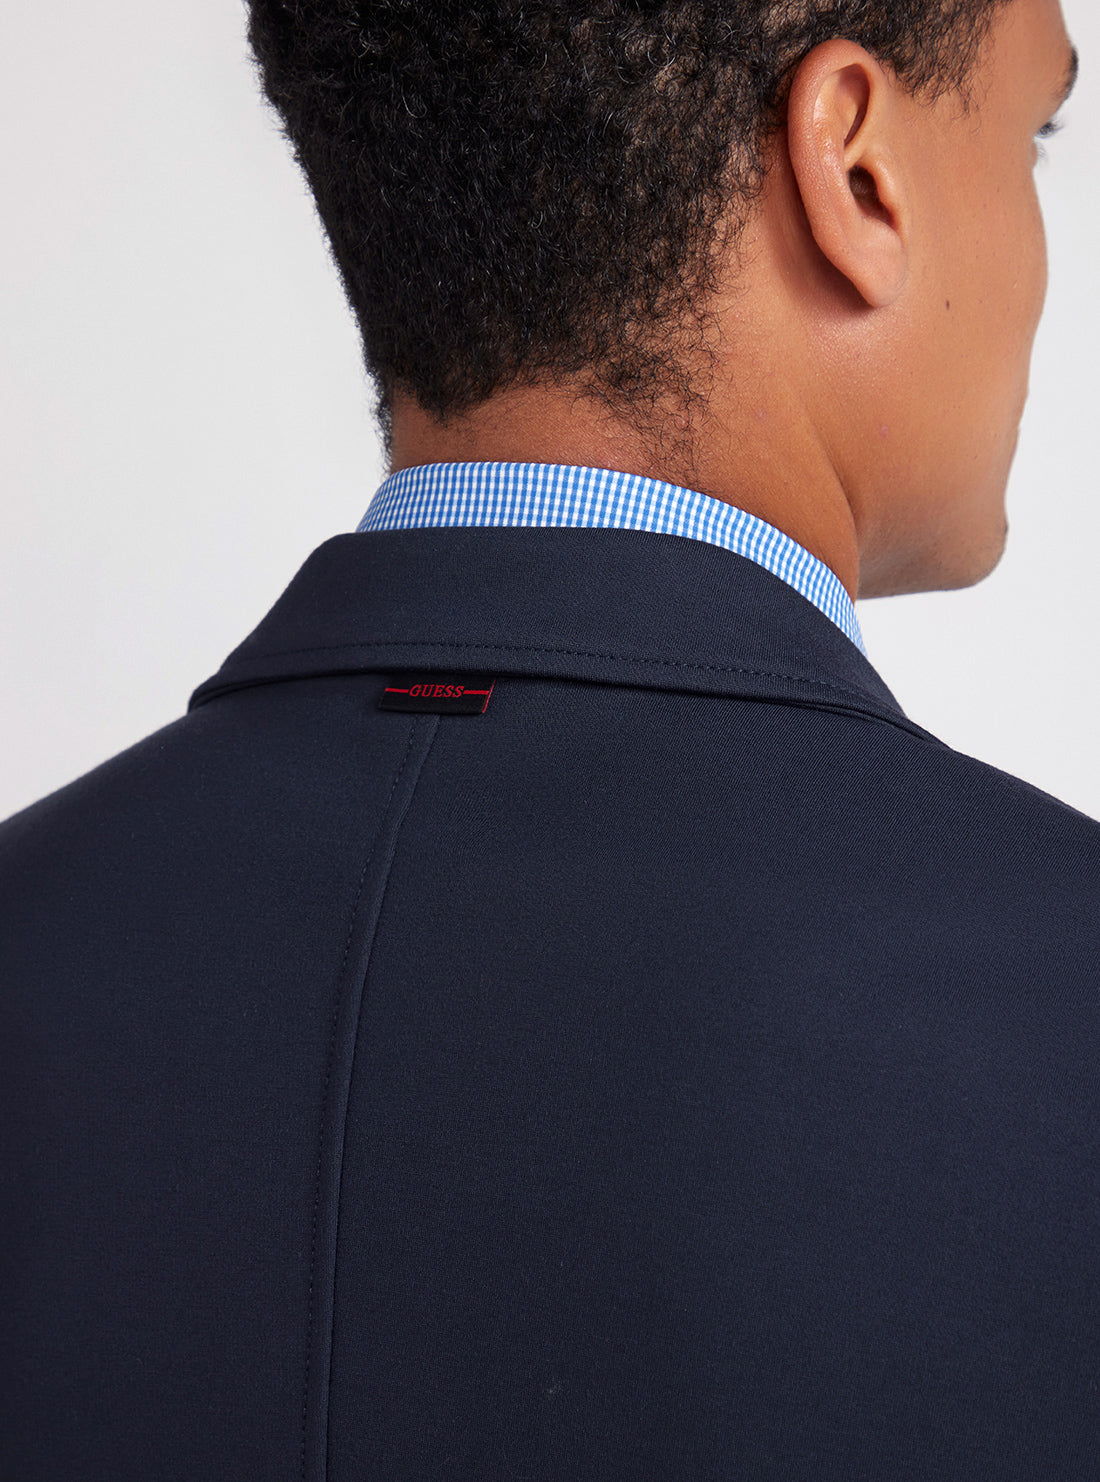 Navy Blue Tyron Blazer | GUESS men's apparel | detail view back